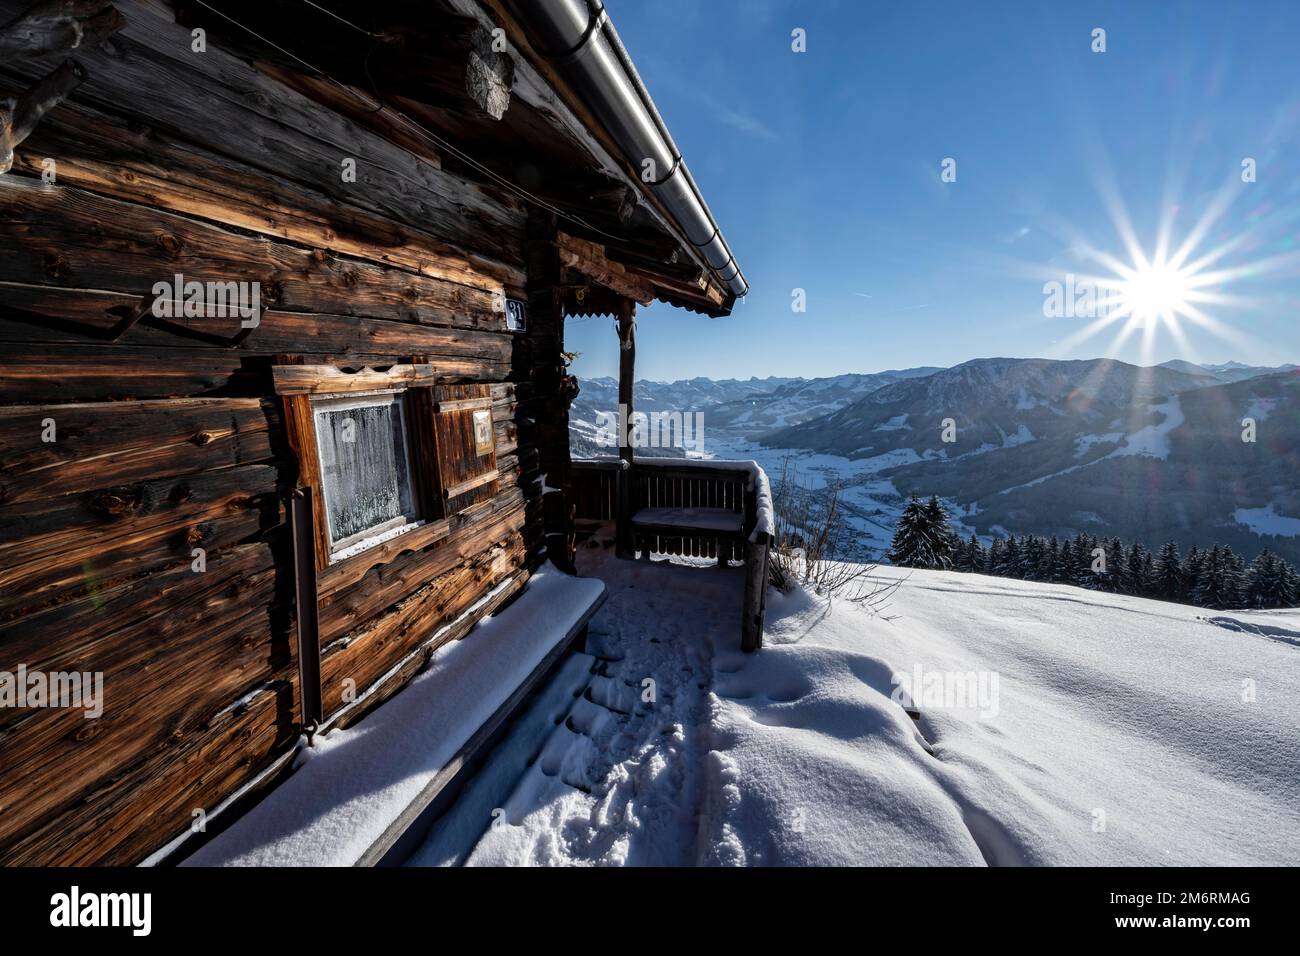 Vista sulle montagne innevate di Bixen im Thale, paesaggio invernale, rifugio nella neve, presso la zona sciistica Bixen im Thale, Tirolo, Austria Foto Stock